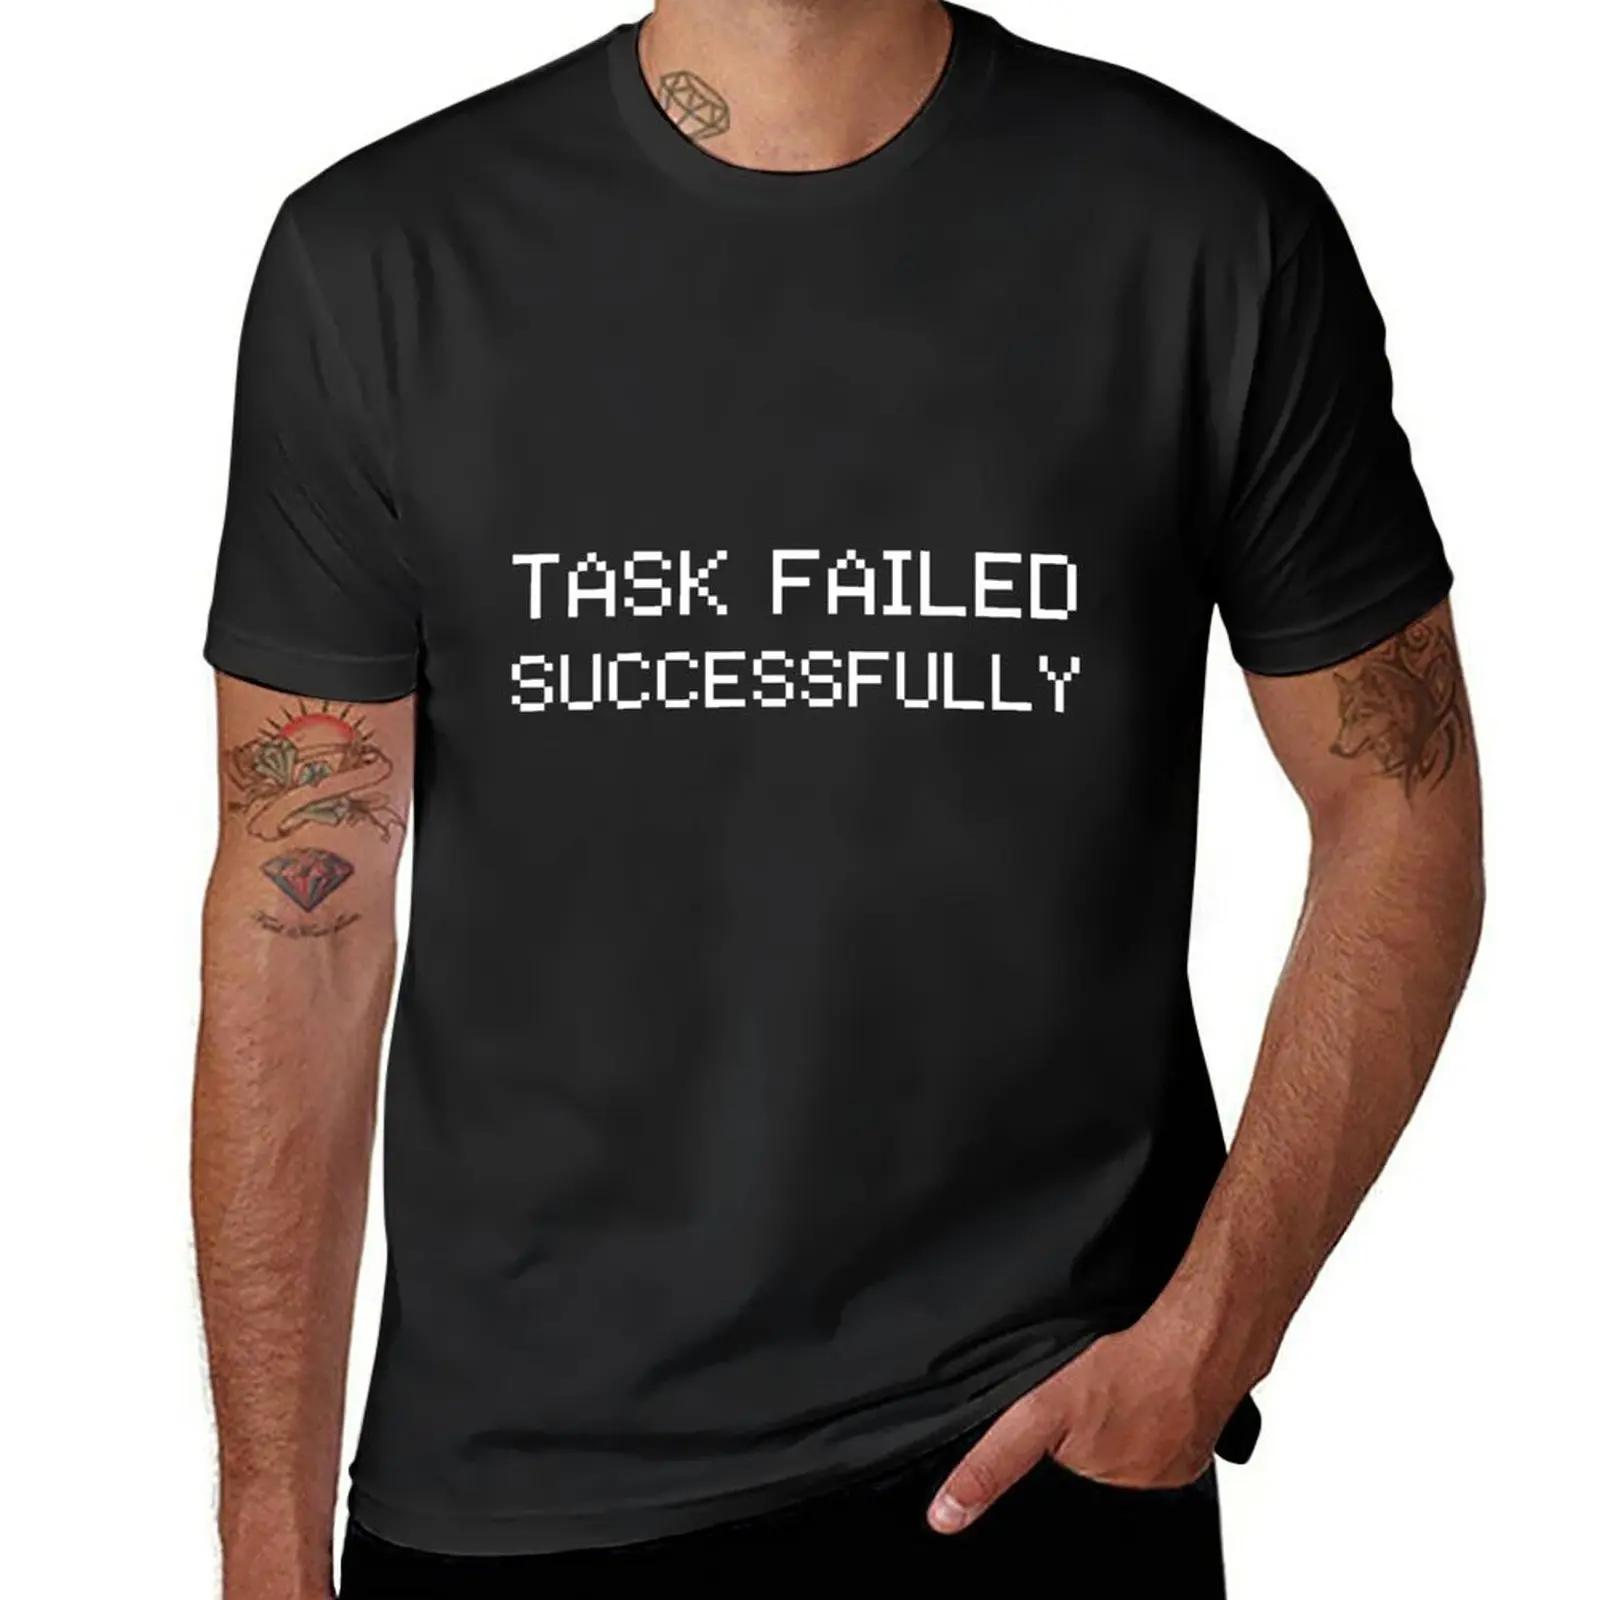 새로운 TASK FAILED 티셔츠, 그래픽 티셔츠, 소년 티셔츠, 커스텀 티셔츠, 나만의 남성 그래픽 티셔츠, 애니메이션 디자인